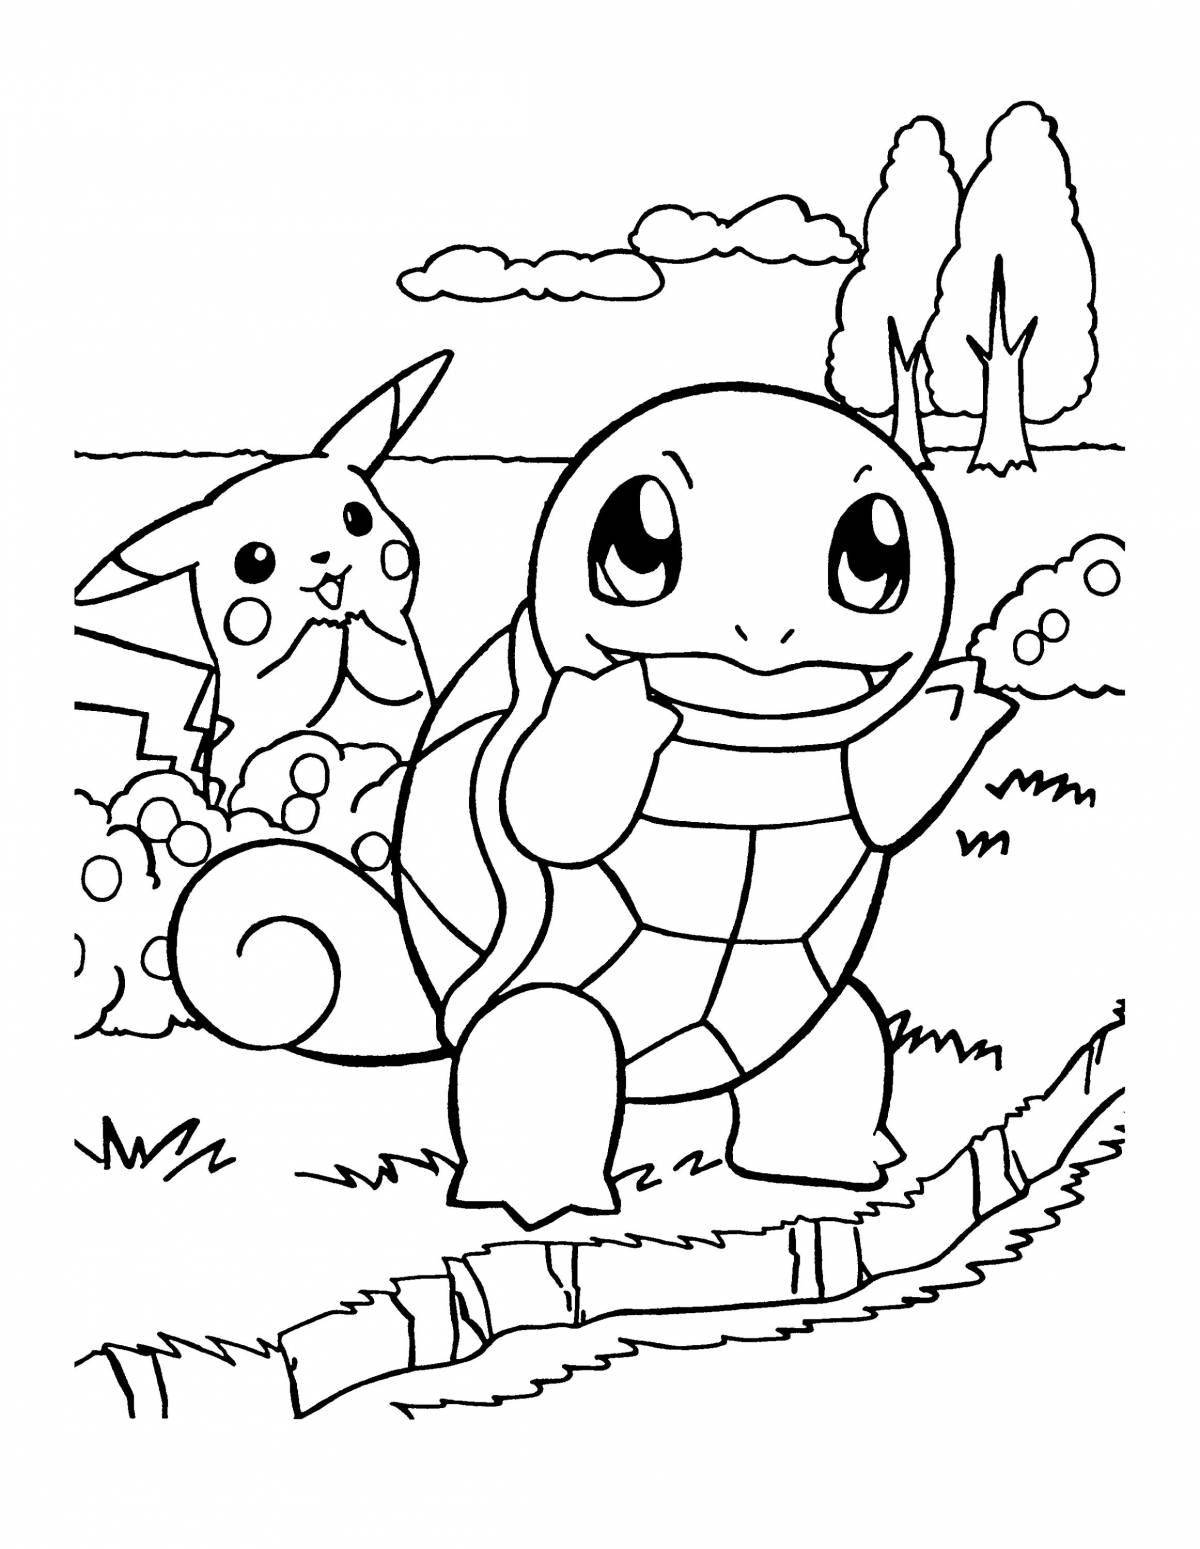 Stitch and pikachu glitter coloring book